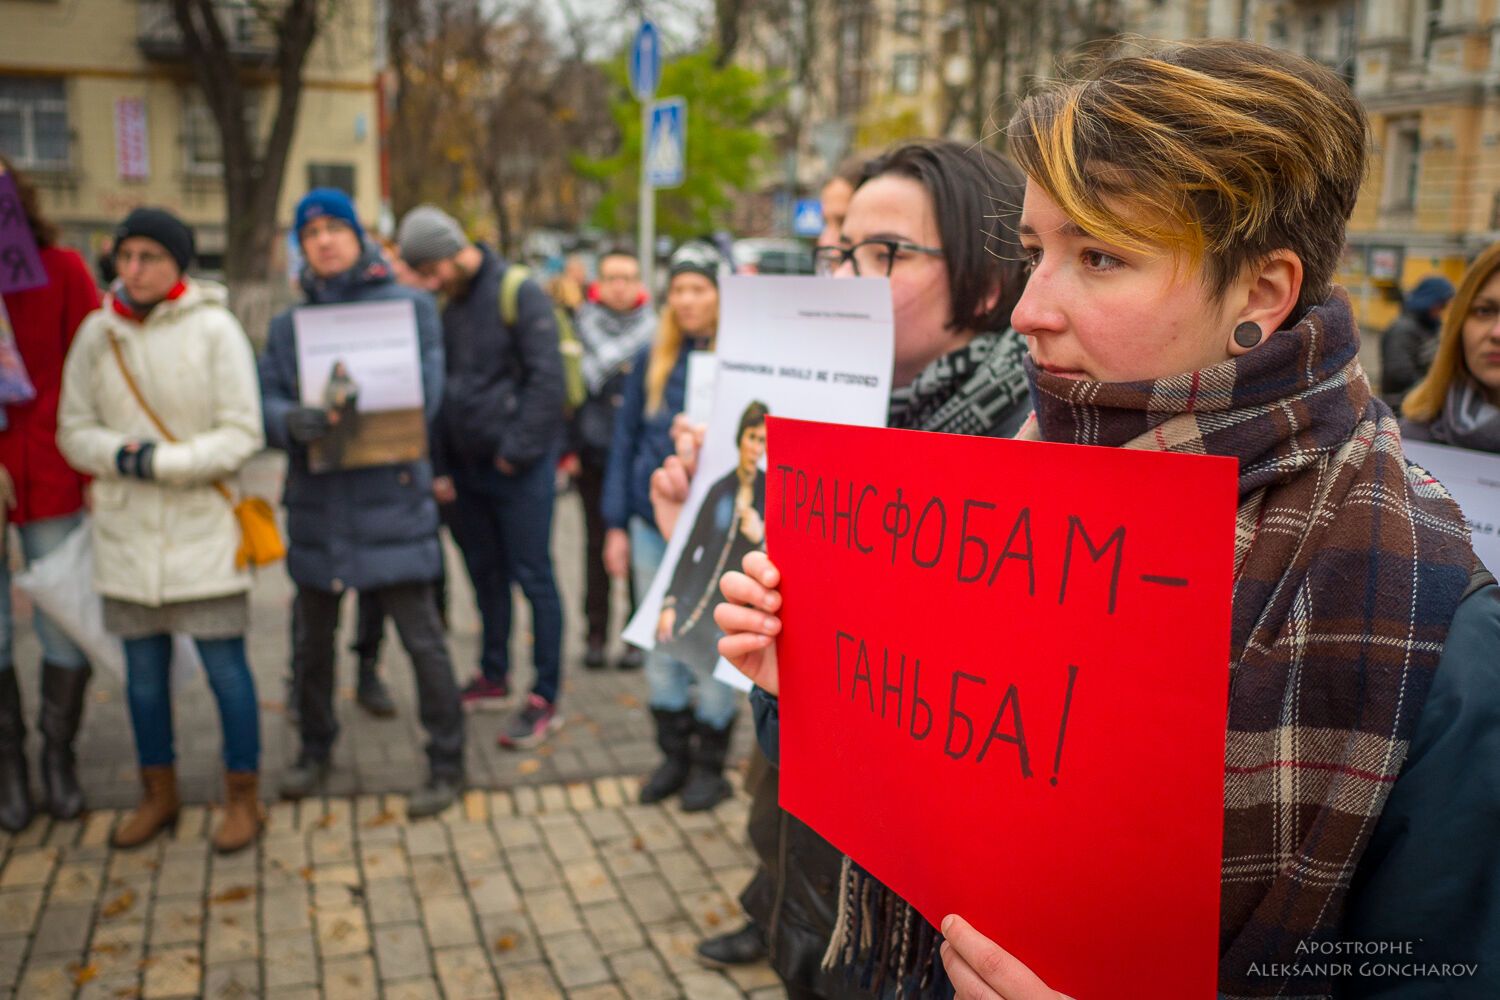 "Не вам обирати, хто я": у Києві відбувся марш проти трансфобії